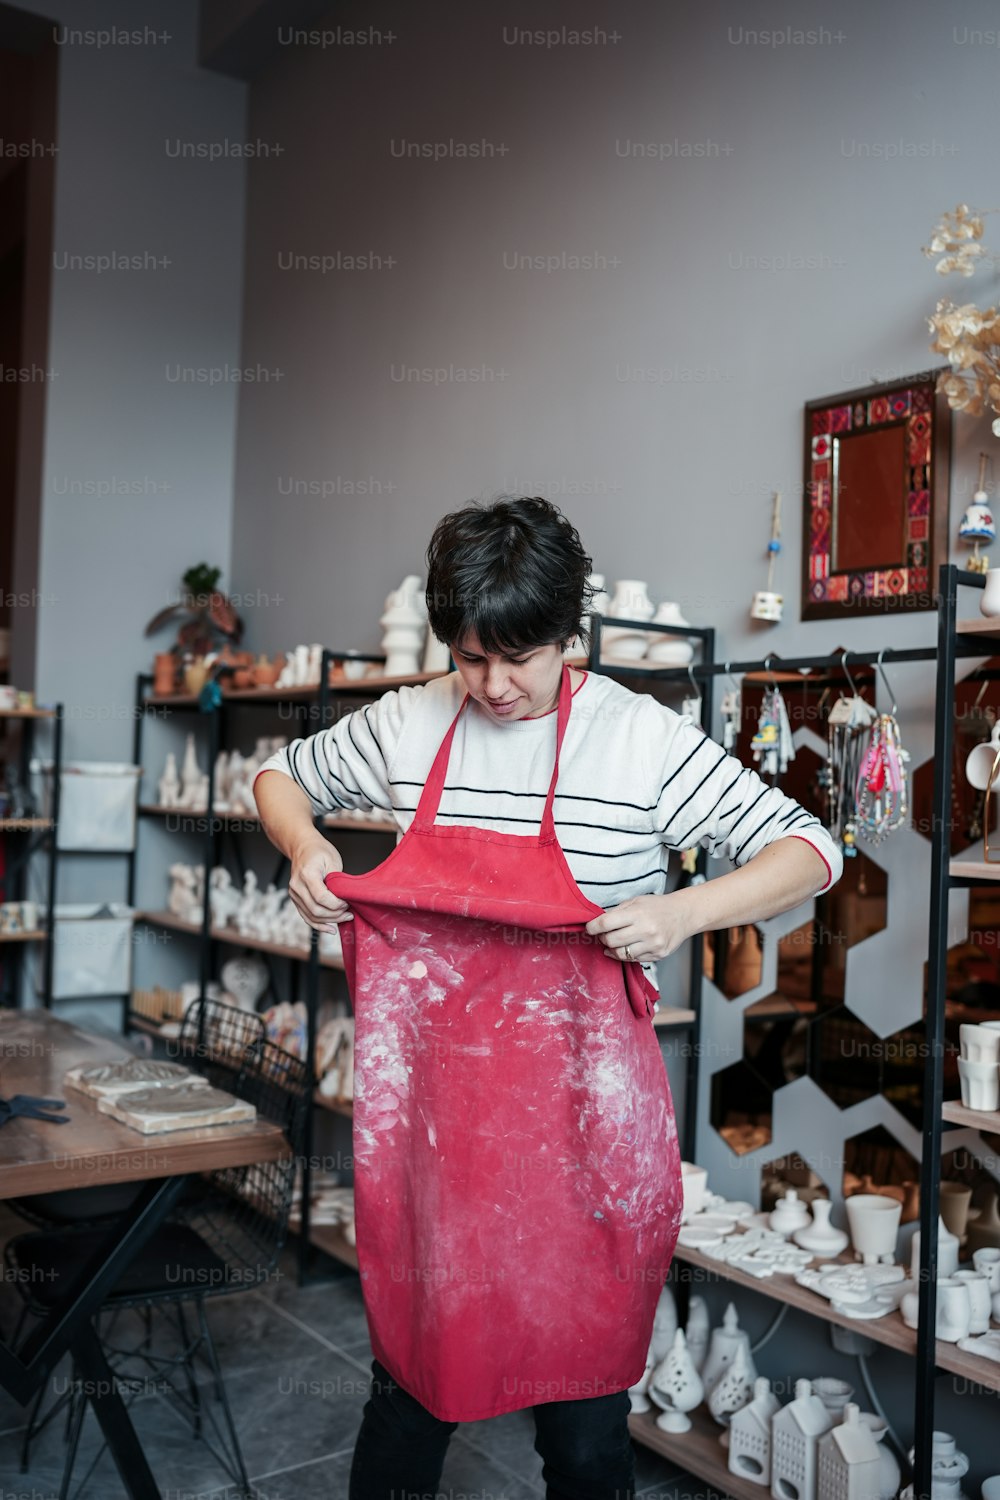 Una mujer con un delantal rojo trabajando en una pieza de cerámica